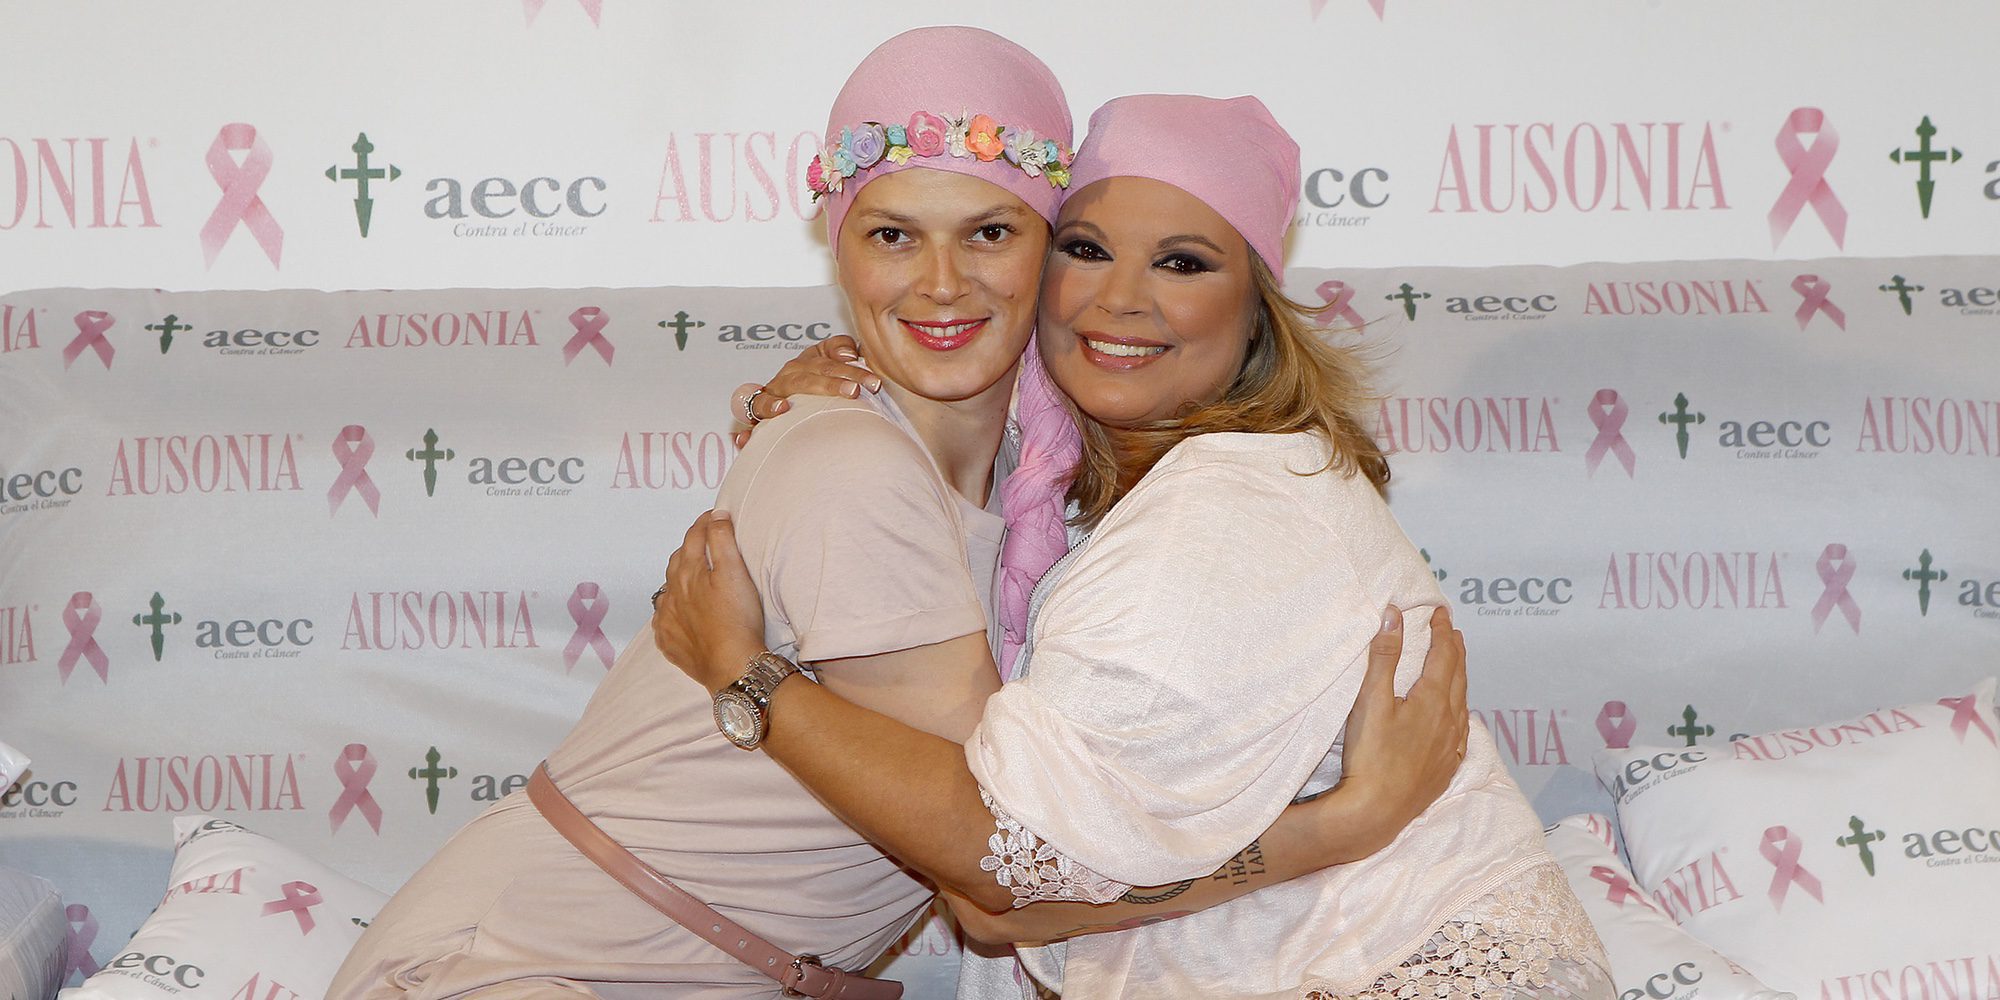 Terelu Campos se derrumba recordando las campañas contra el cáncer que hizo con Bimba Bosé